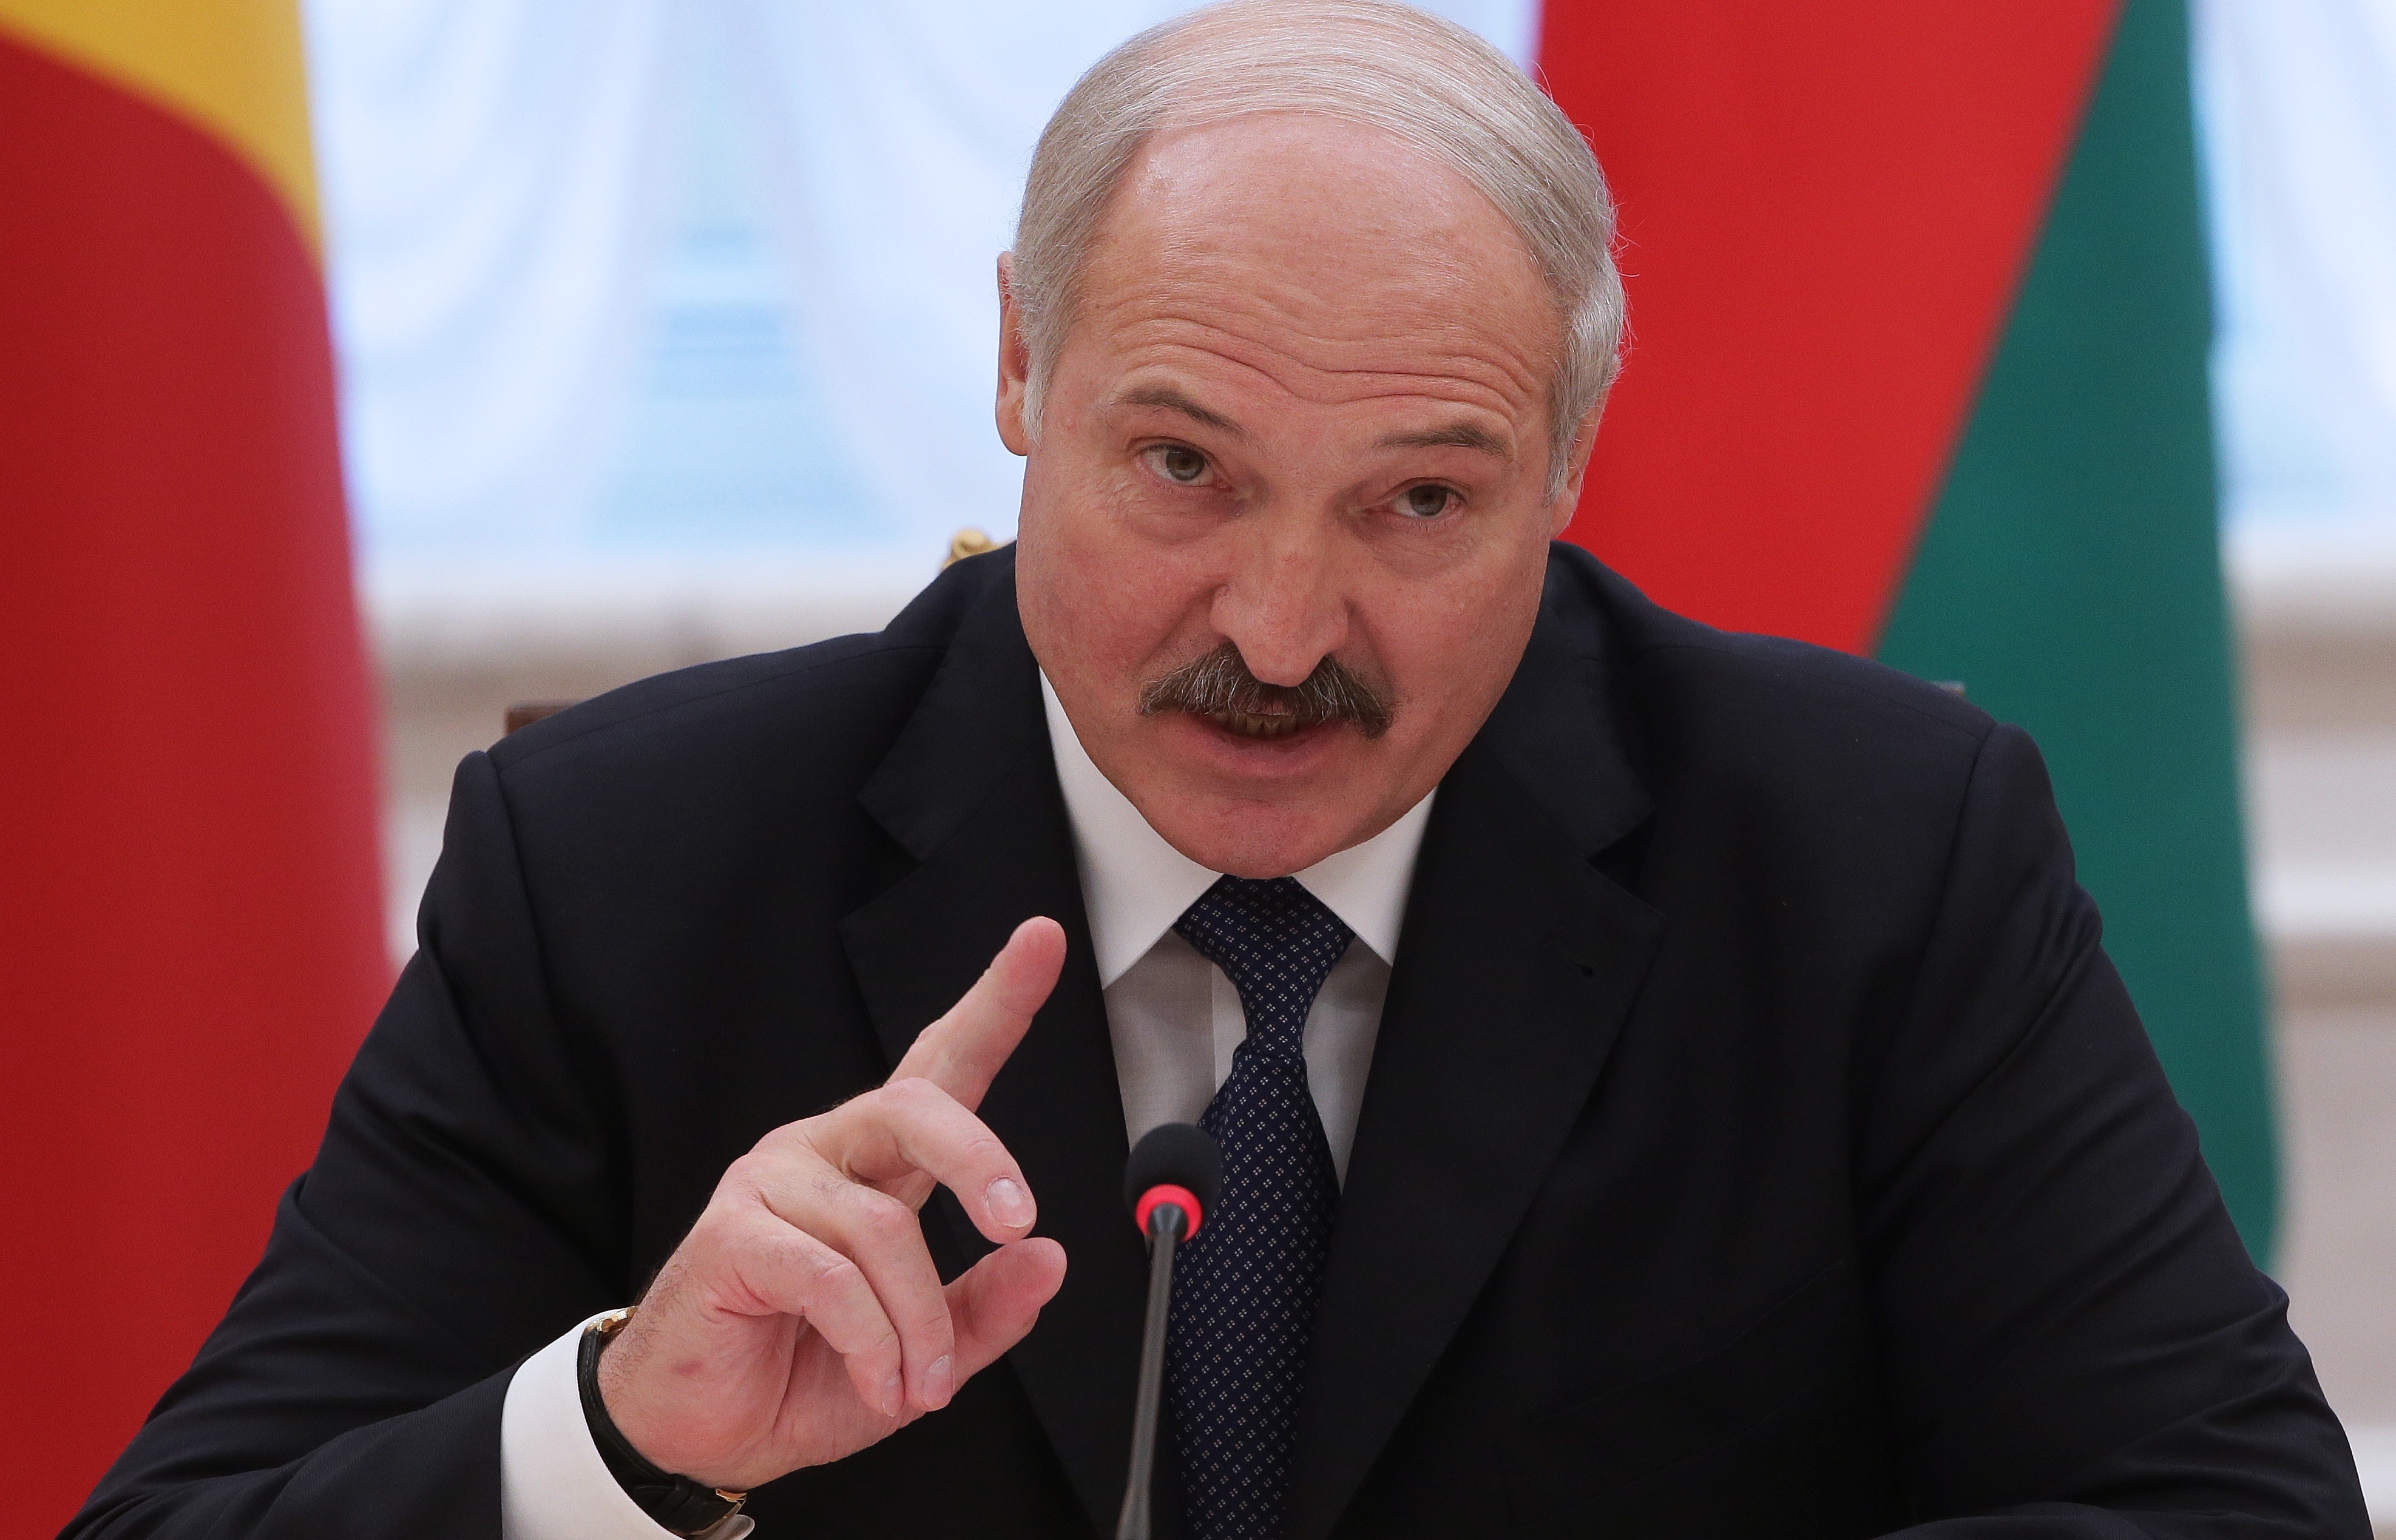 Лукашенко: Россия и Запад достигли предела конфронтации и недоверия